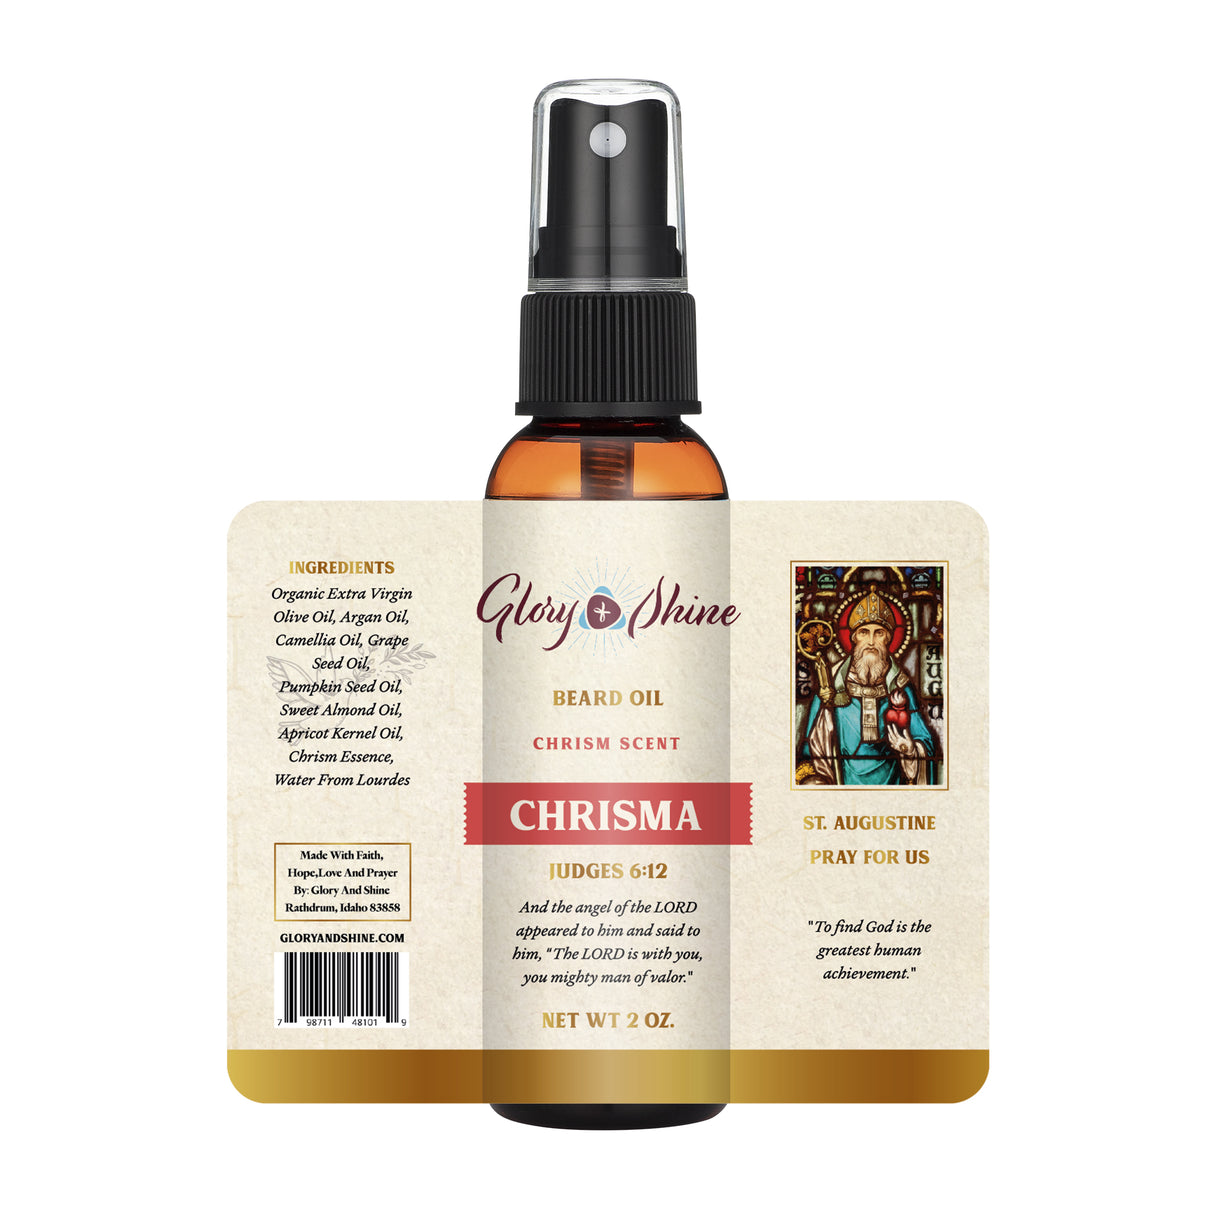 Chrisma Beard Oil